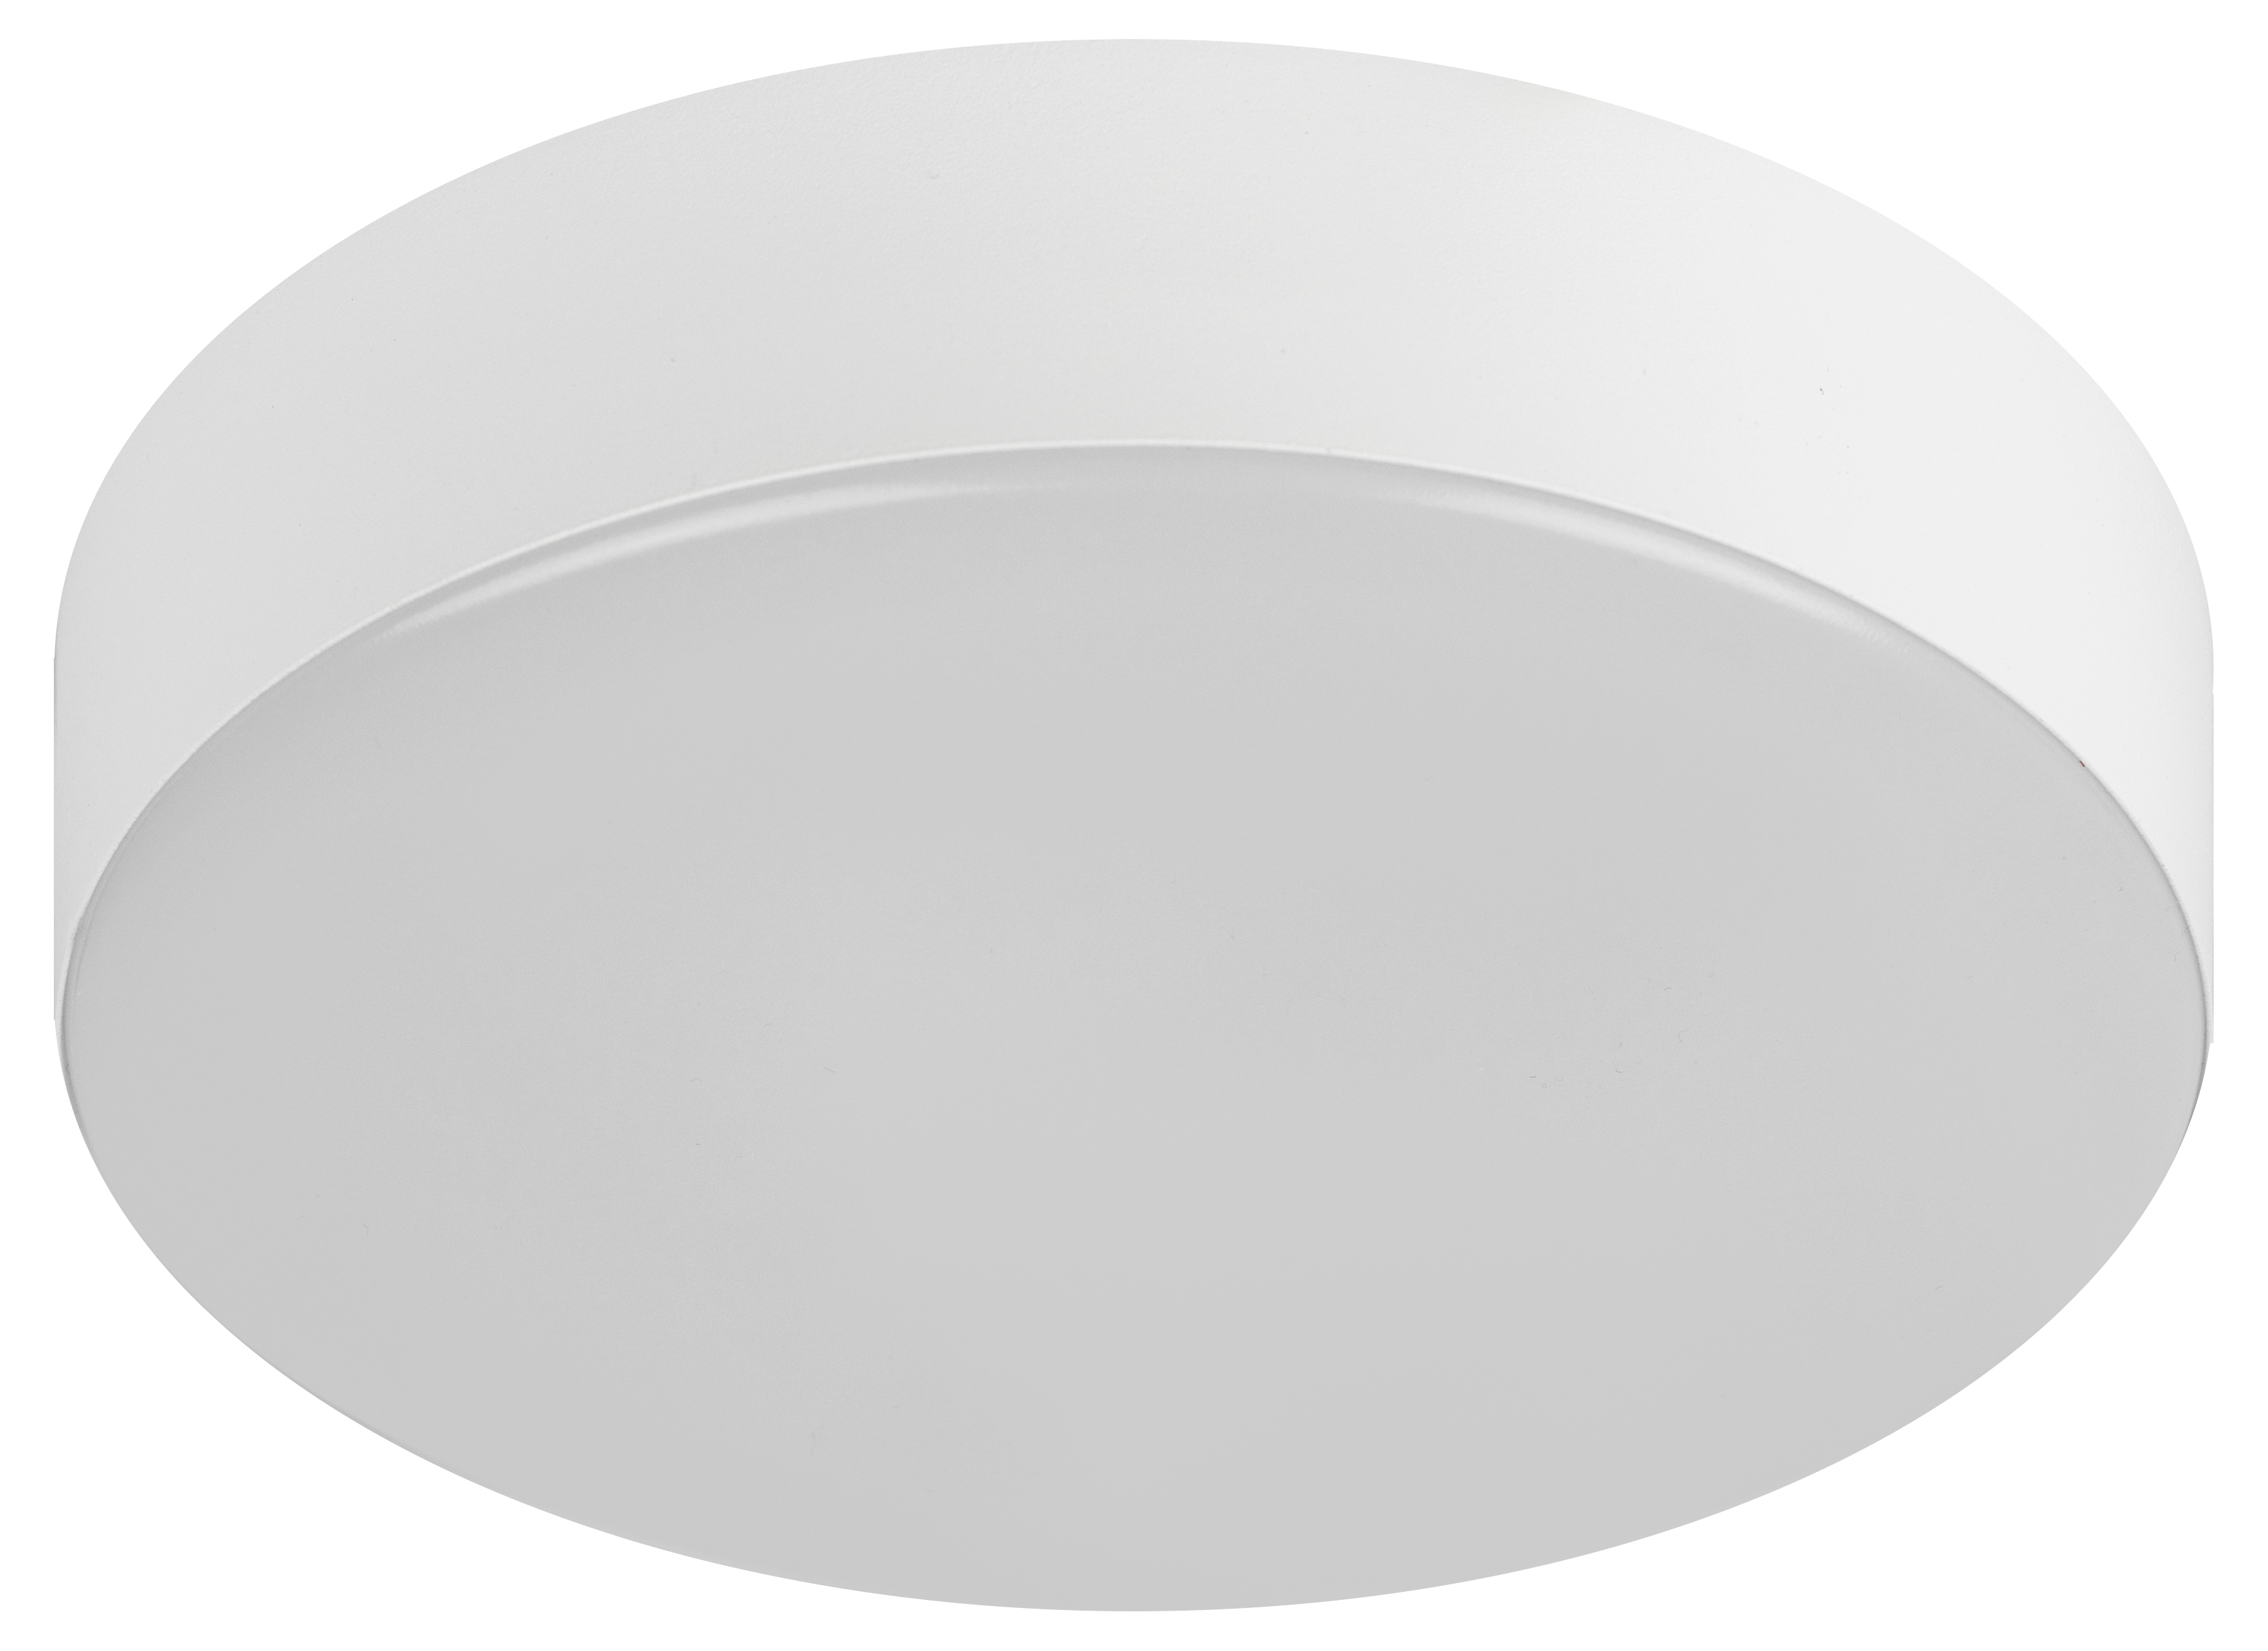 Светильники светодиодные ЭРА Relict 20-60 Вт потолочные, диаметр d=210-480 мм, световой поток 1150-4550Лм, цветовая температура 4000К, IP20